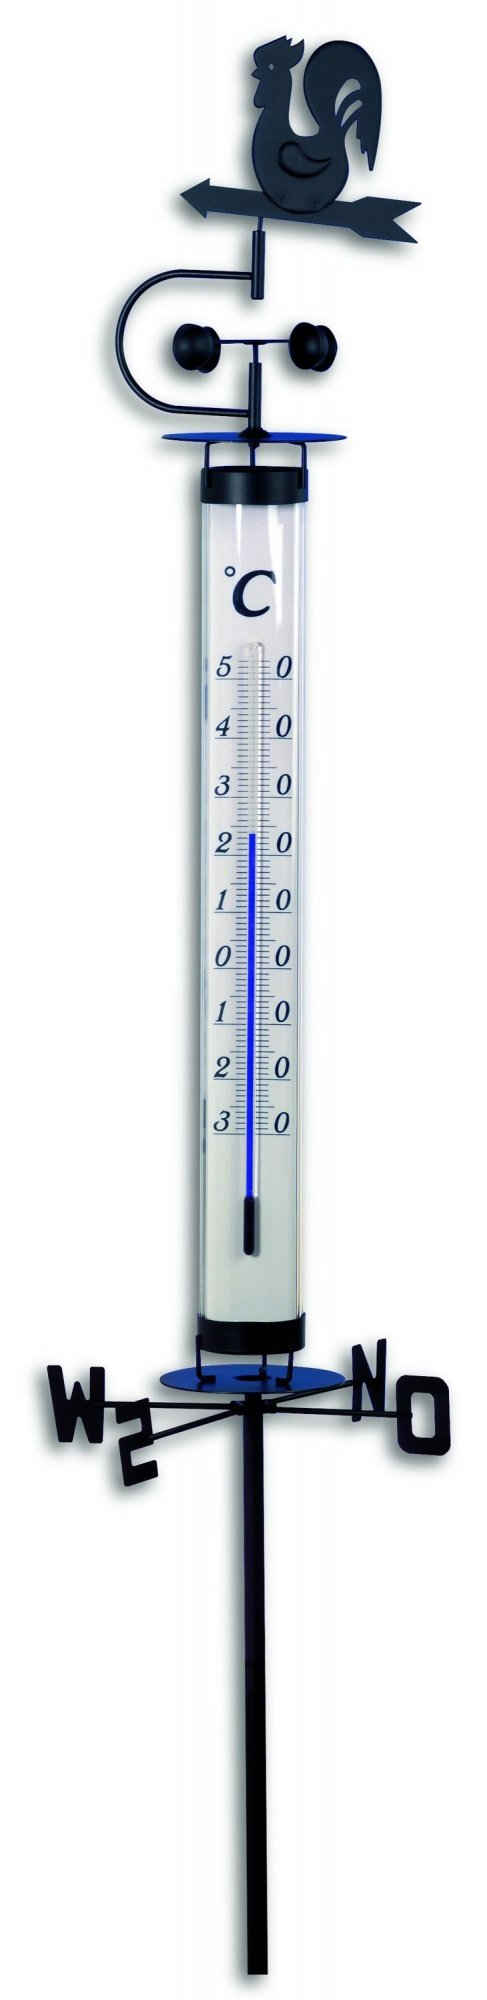 TFA Dostmann Gartenthermometer TFA 12.2035 Analoges Thermometer mit Wetterhahn und Windrad